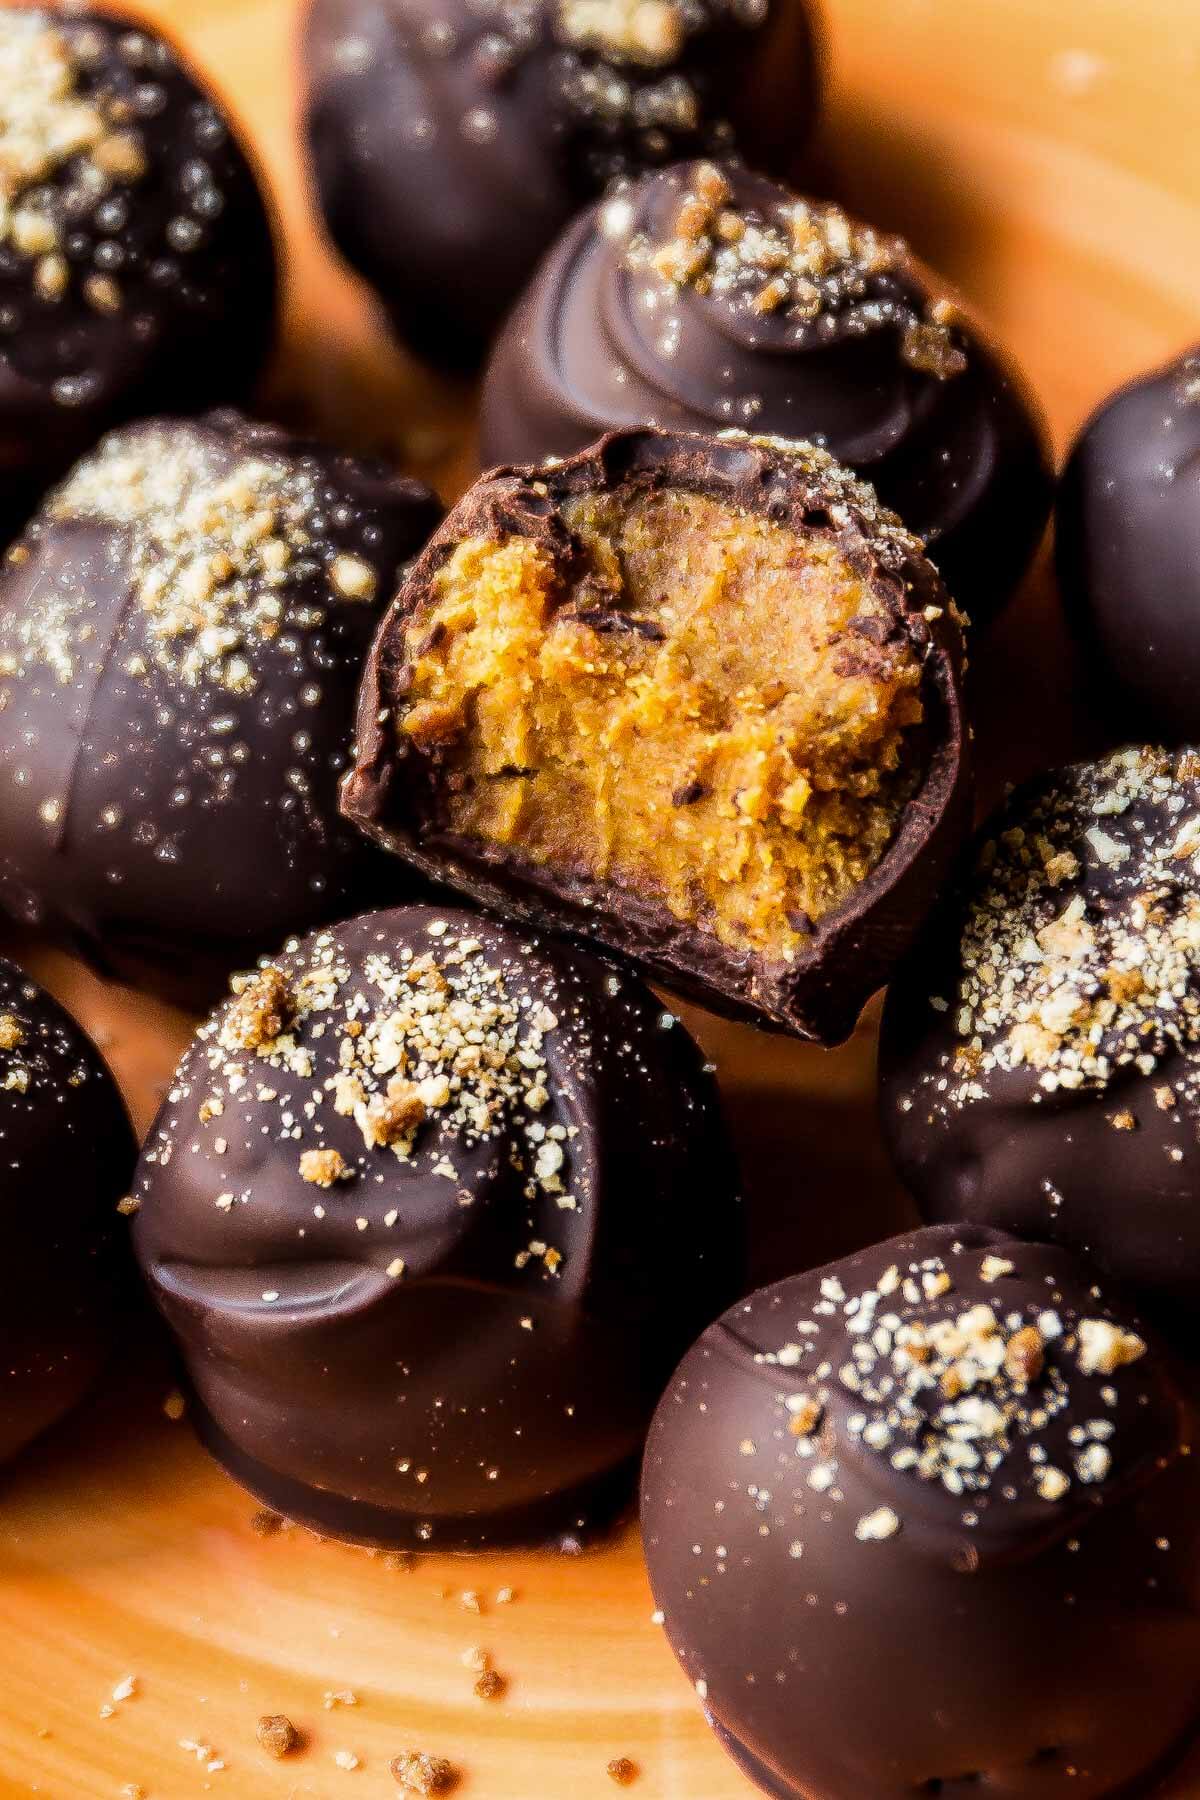 Pour le meilleur régal d'automne, faites ces truffes aux épices de citrouille - elles sont étonnamment faciles et peuvent être enrobées de chocolat blanc ou noir! Recette sur sallysbakingaddiction.com